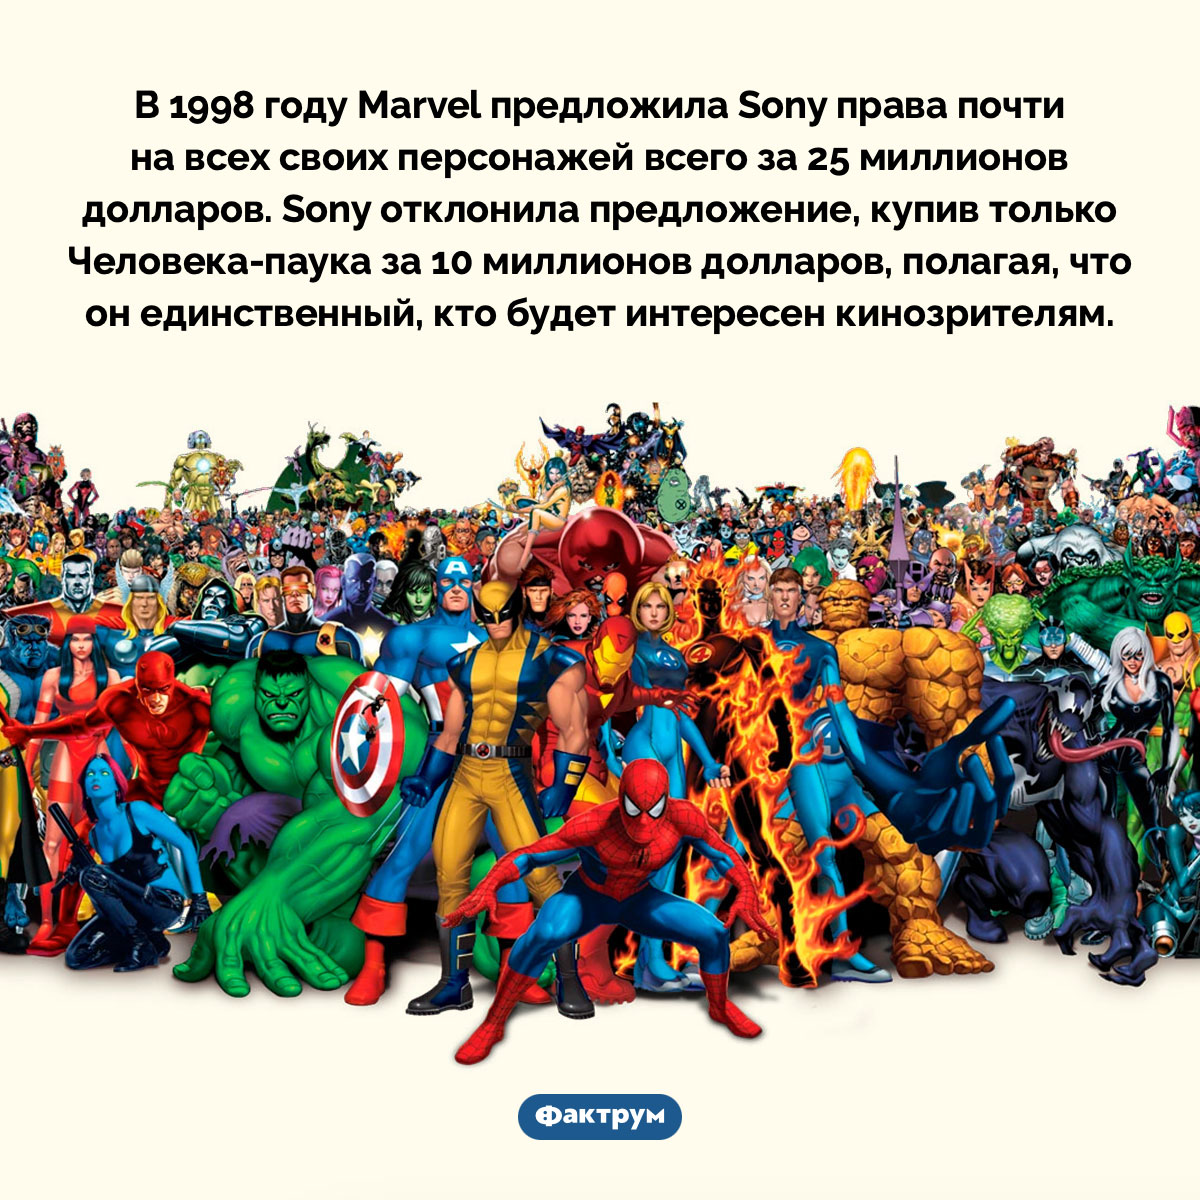 В 1990-х Marvel хотела продать Sony права на почти всех супергероев. В 1998 году Marvel предложила Sony права почти на всех своих персонажей всего за 25 миллионов долларов. Sony отклонила предложение, купив только Человека-паука за 10 миллионов долларов, полагая, что он единственный, кто будет интересен кинозрителям.